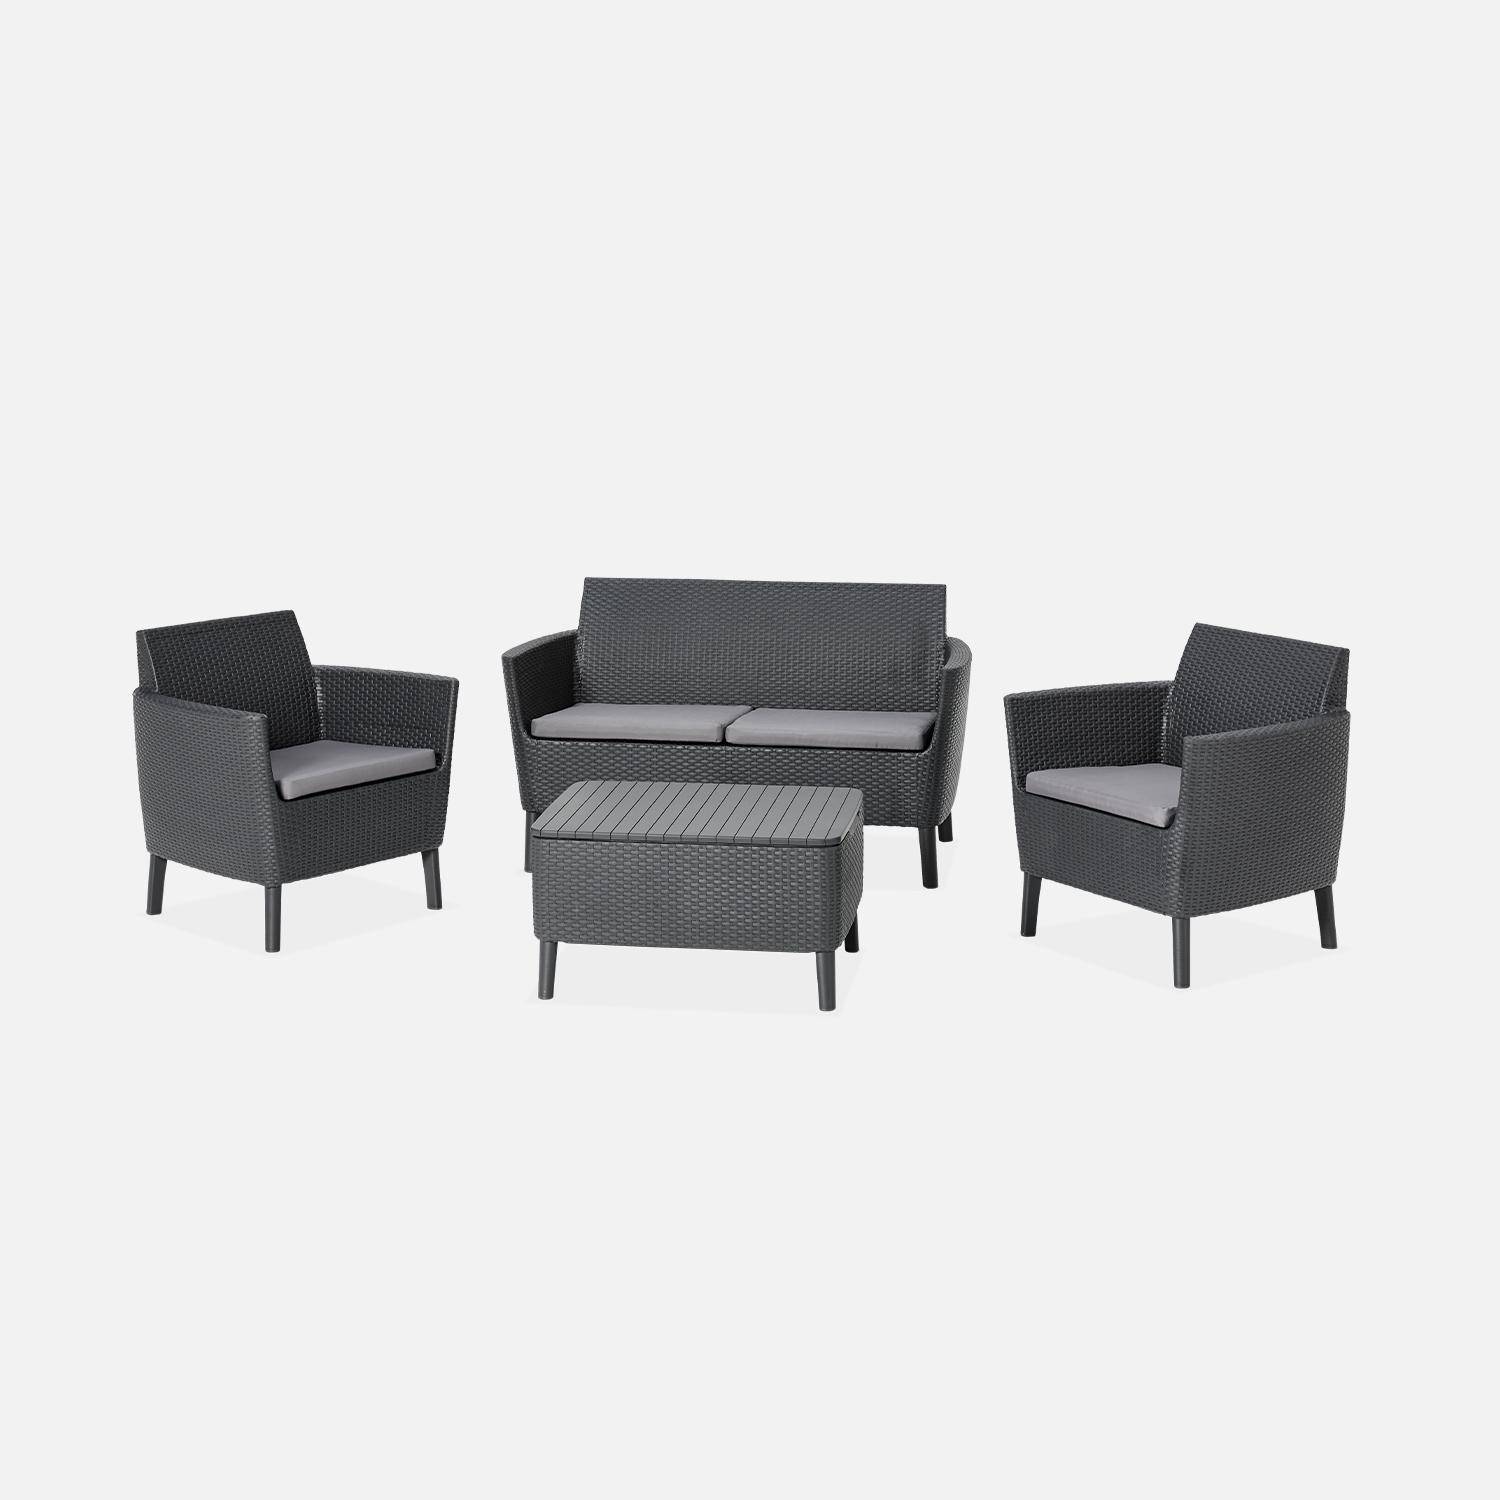  Conjunto de muebles de jardín de resina plástica inyectada imitando el ratán - Salemo 4 - Grafito, cojines grises - 4 asientos, un sofá, dos sillones, una mesa de centro Photo2